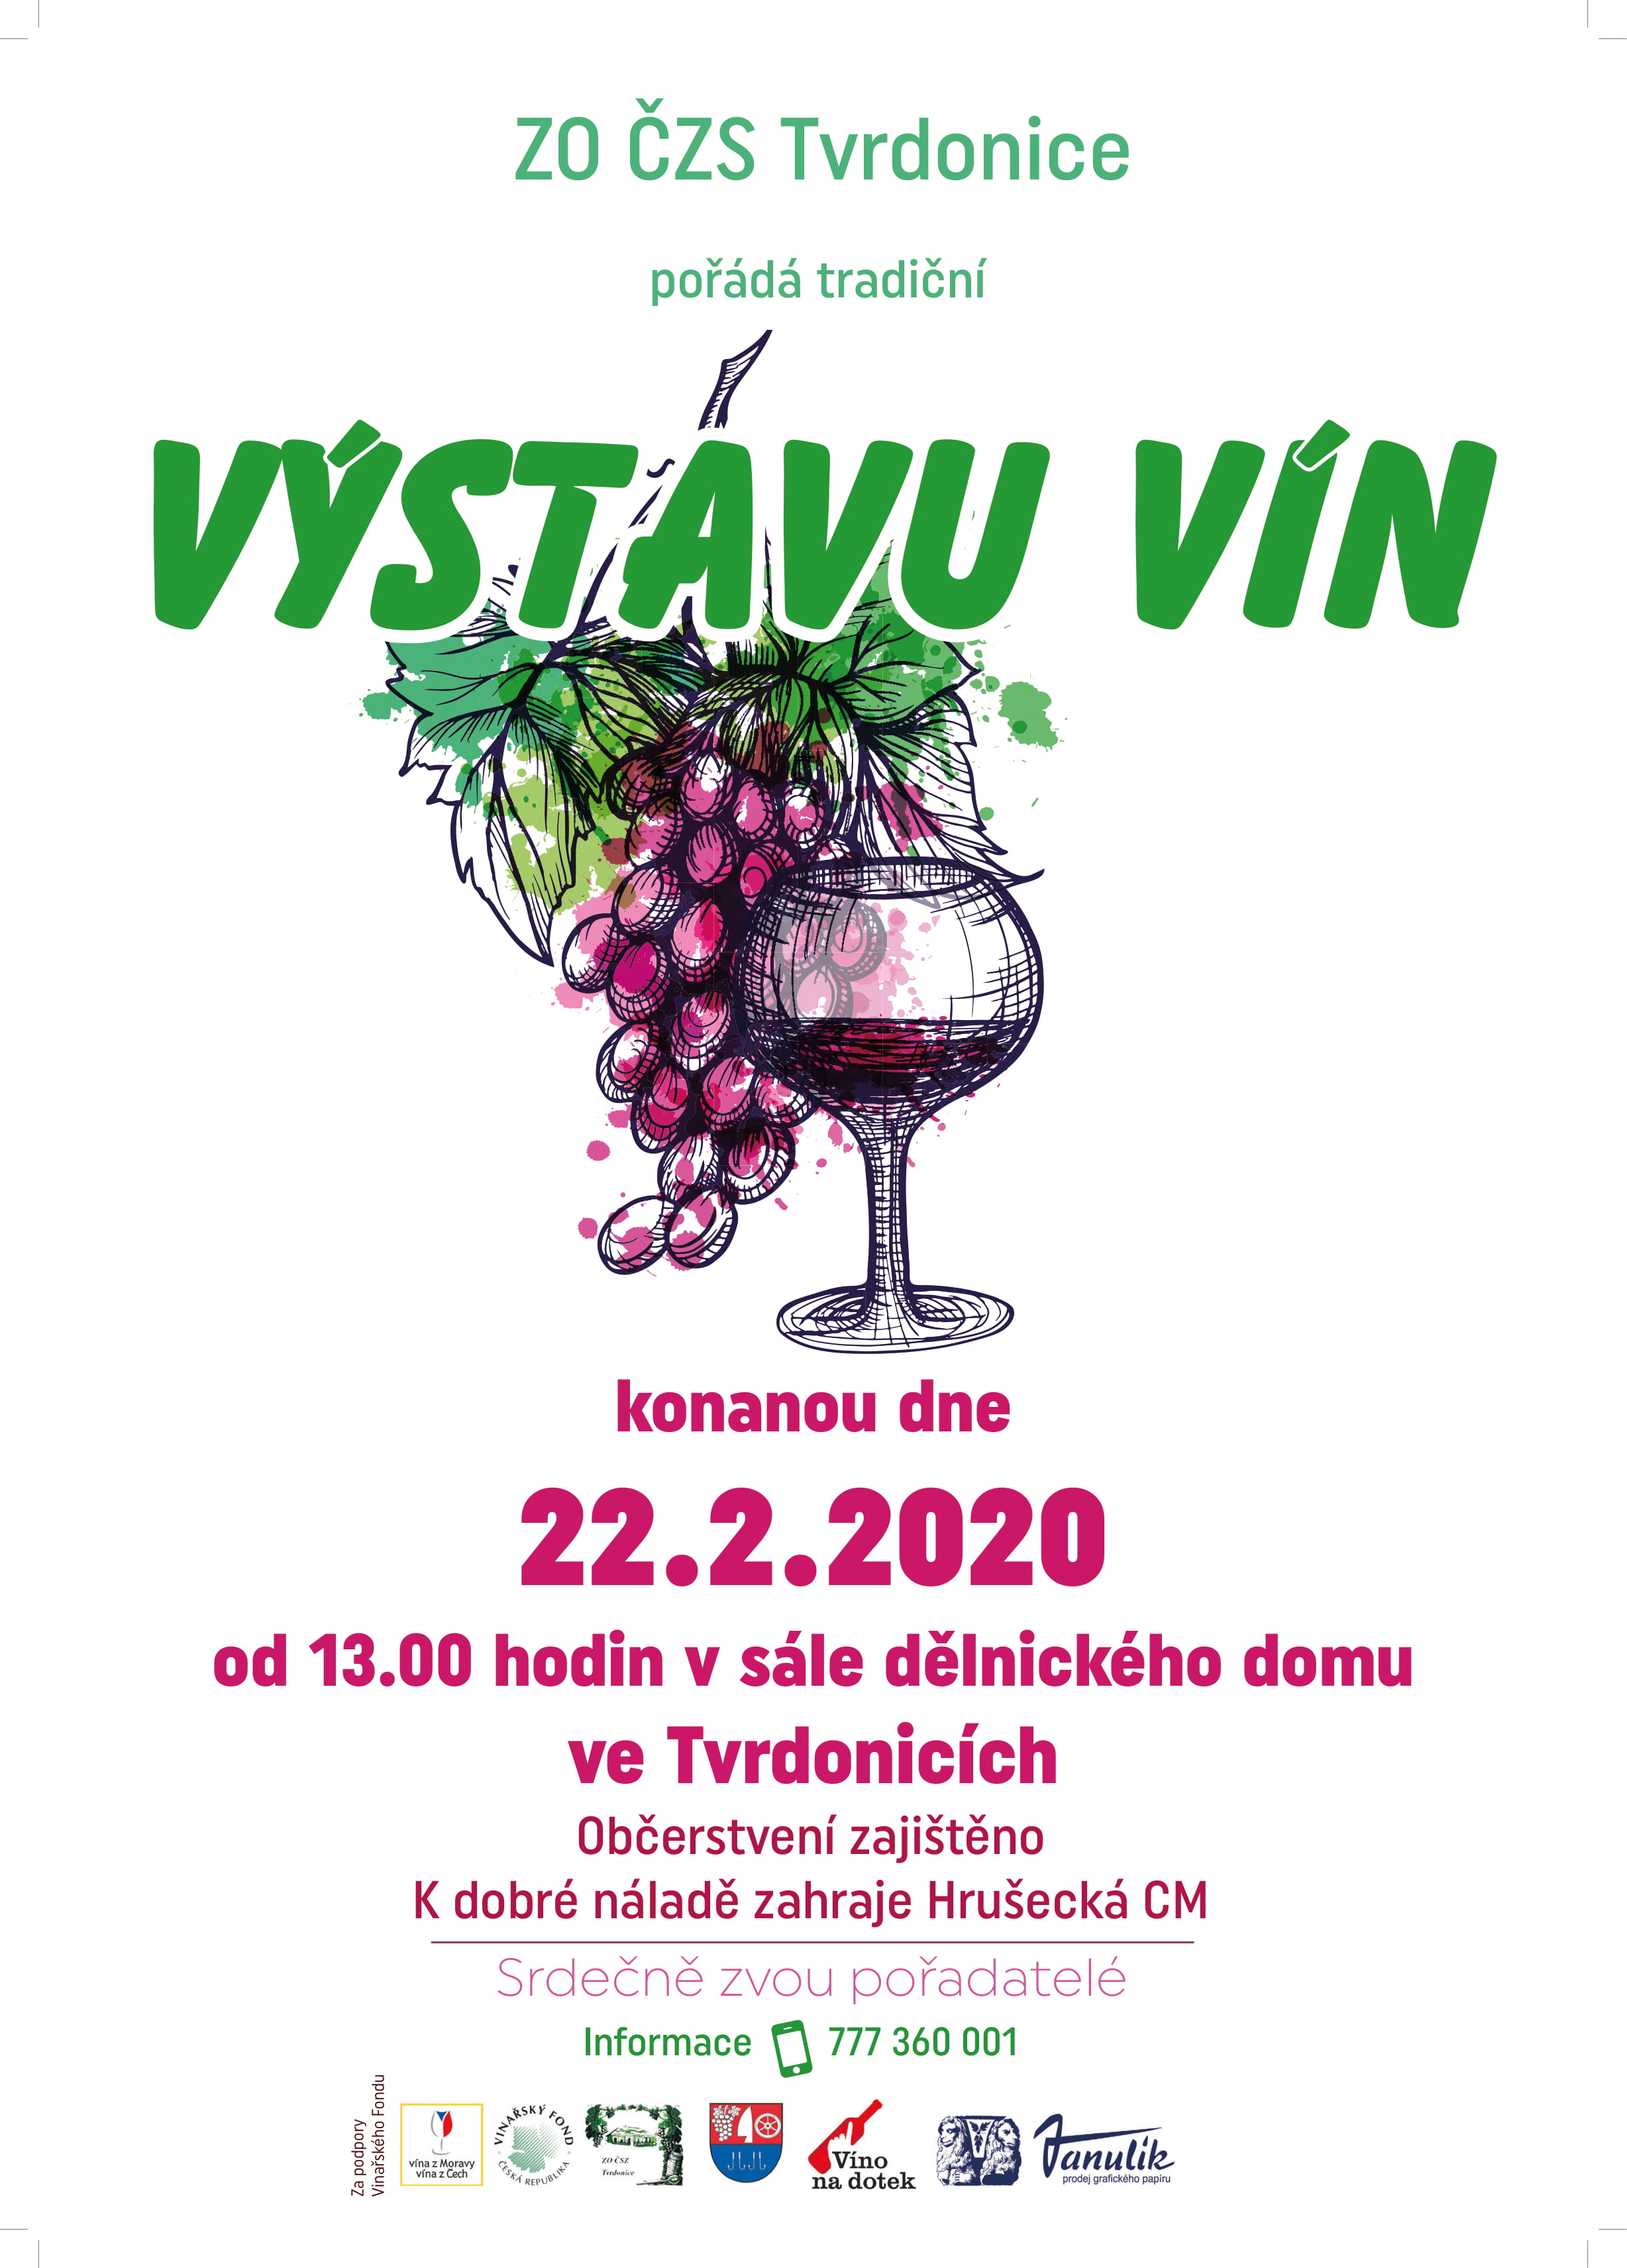 Vystava vin Tvrdonice plakat 2020 1